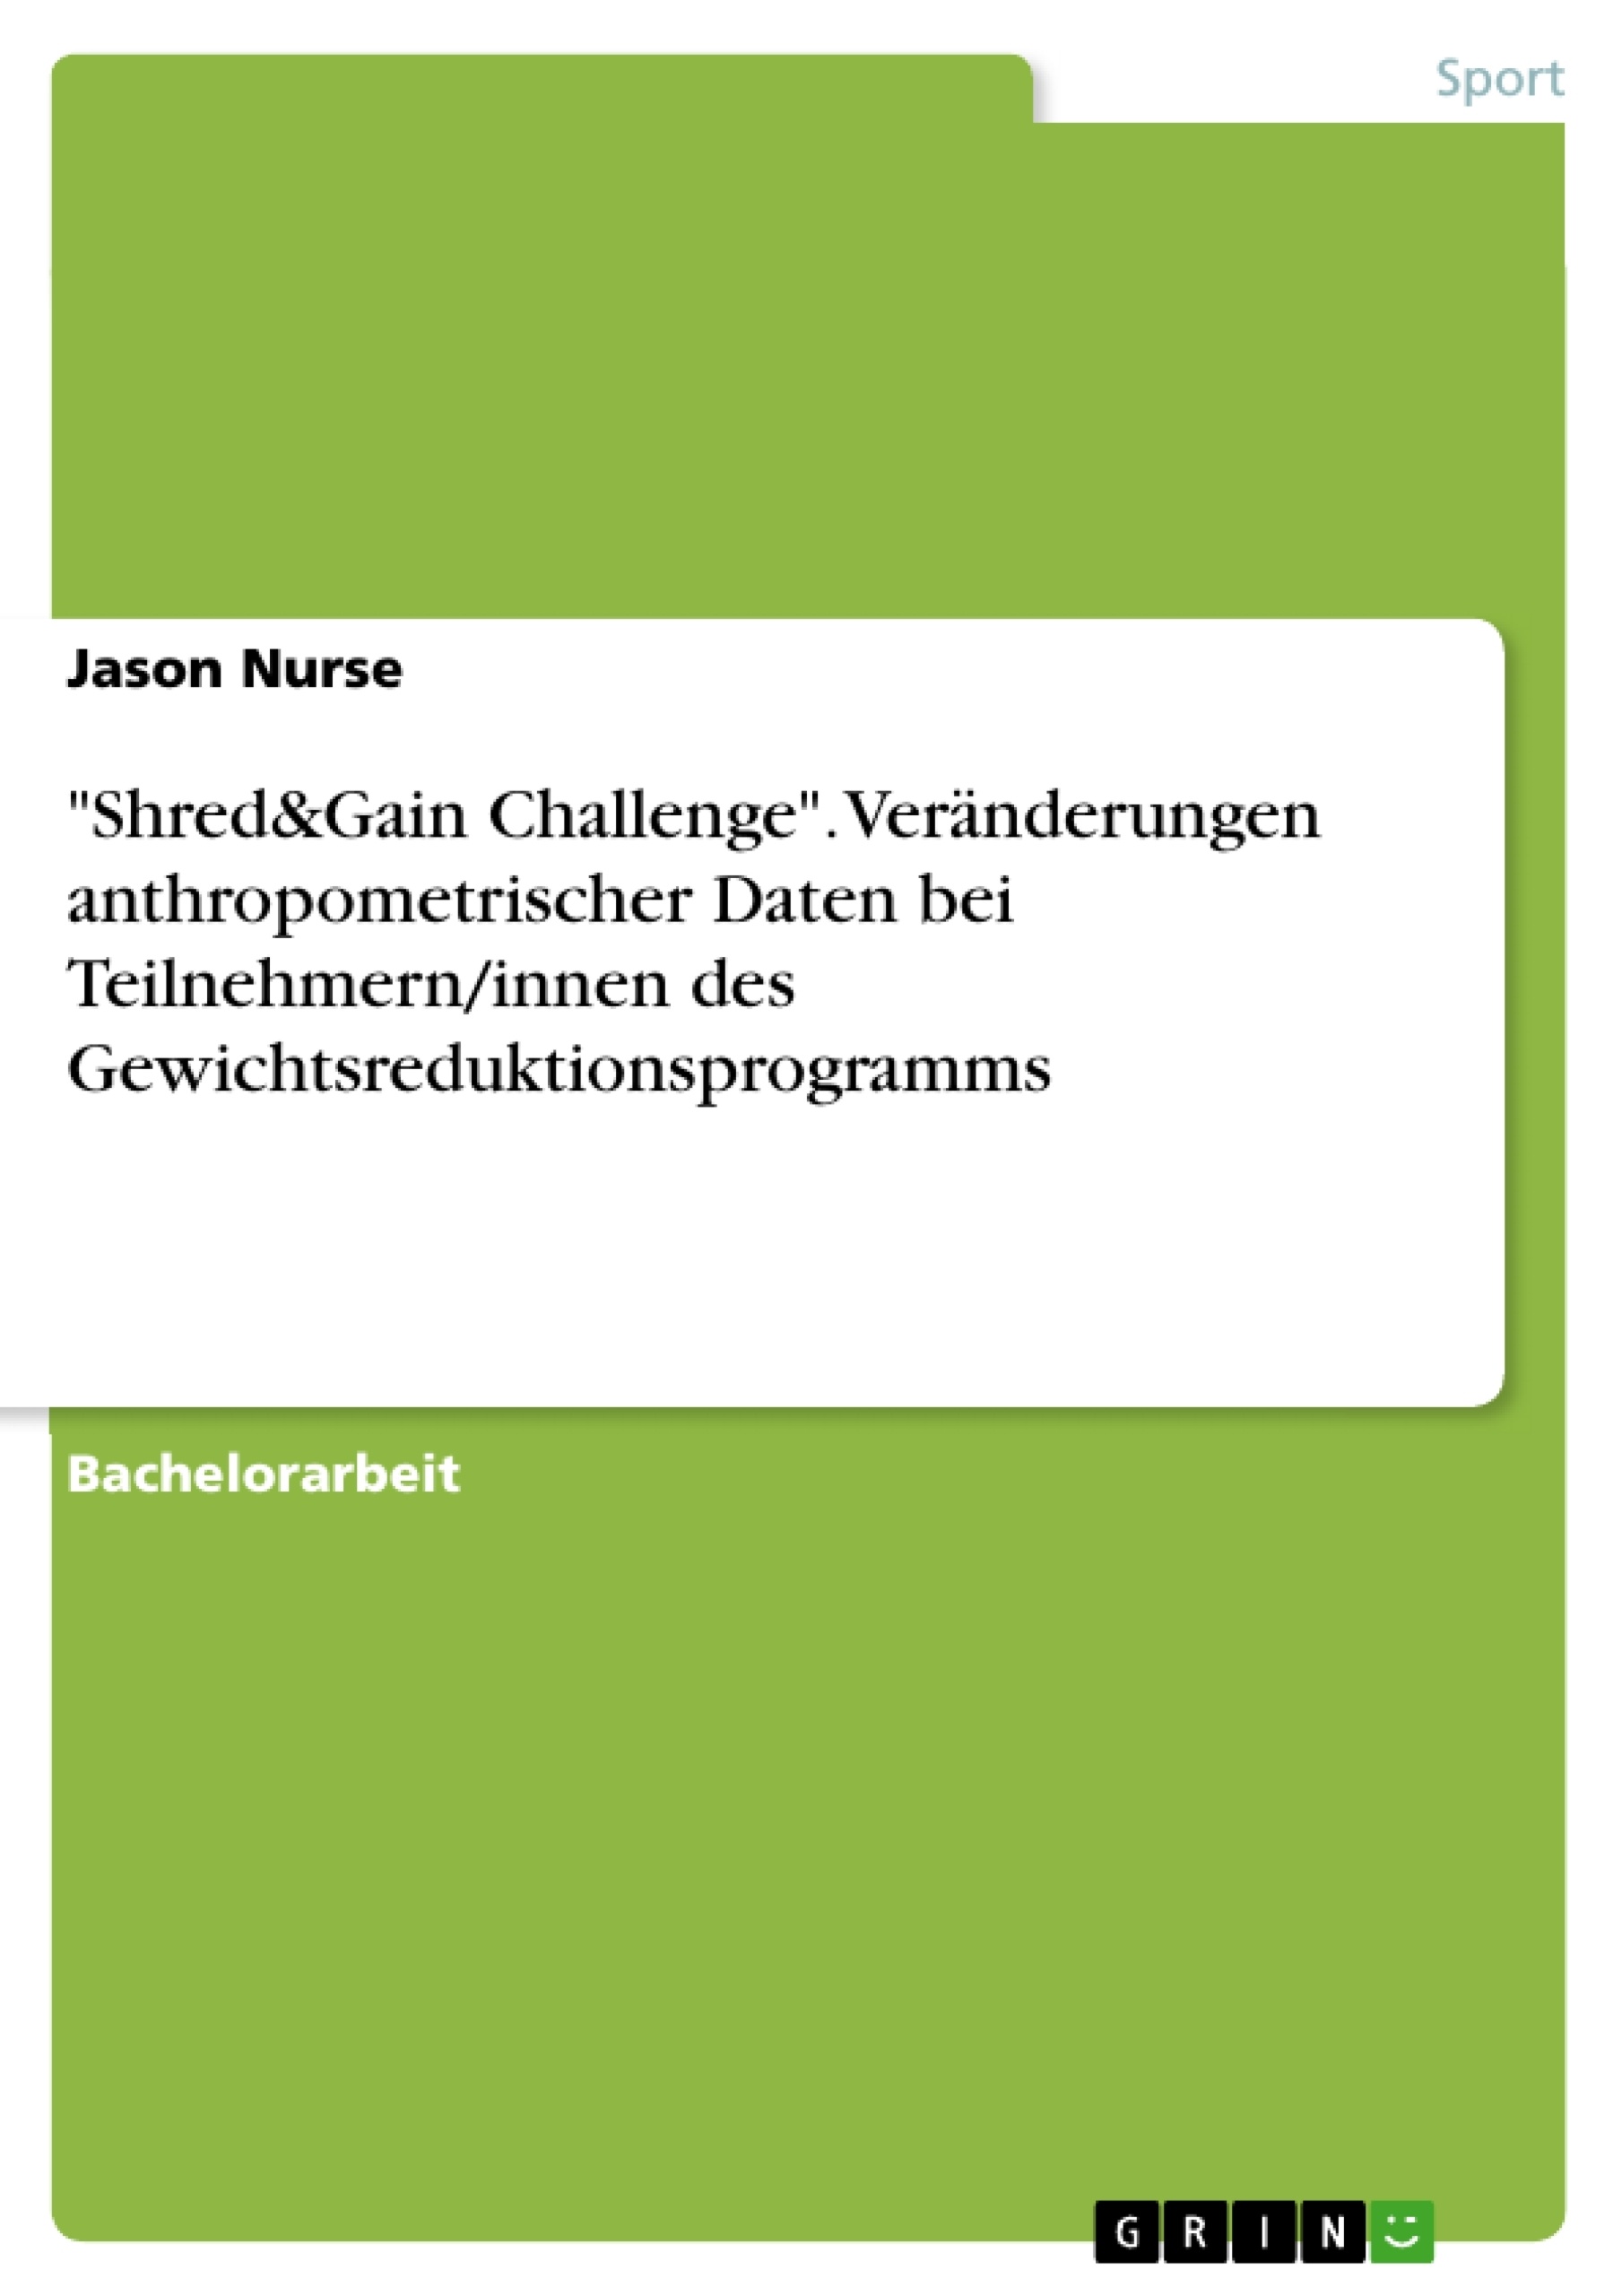 Title: "Shred&Gain Challenge". Veränderungen anthropometrischer Daten bei Teilnehmern/innen des Gewichtsreduktionsprogramms